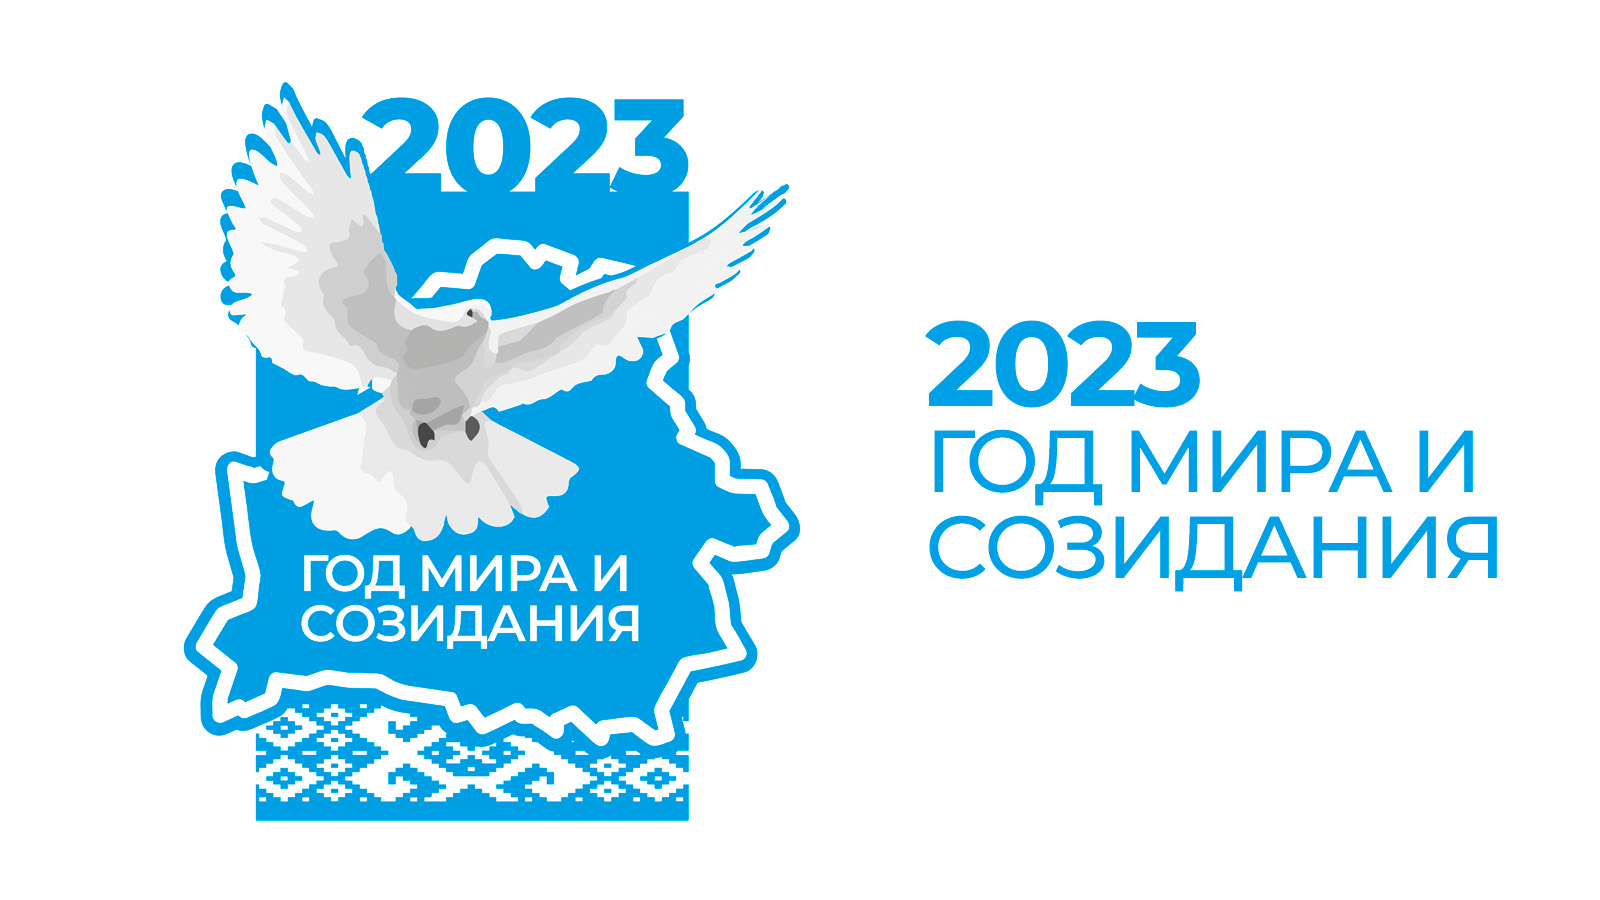 2023 - Год мира и созидания - логотип